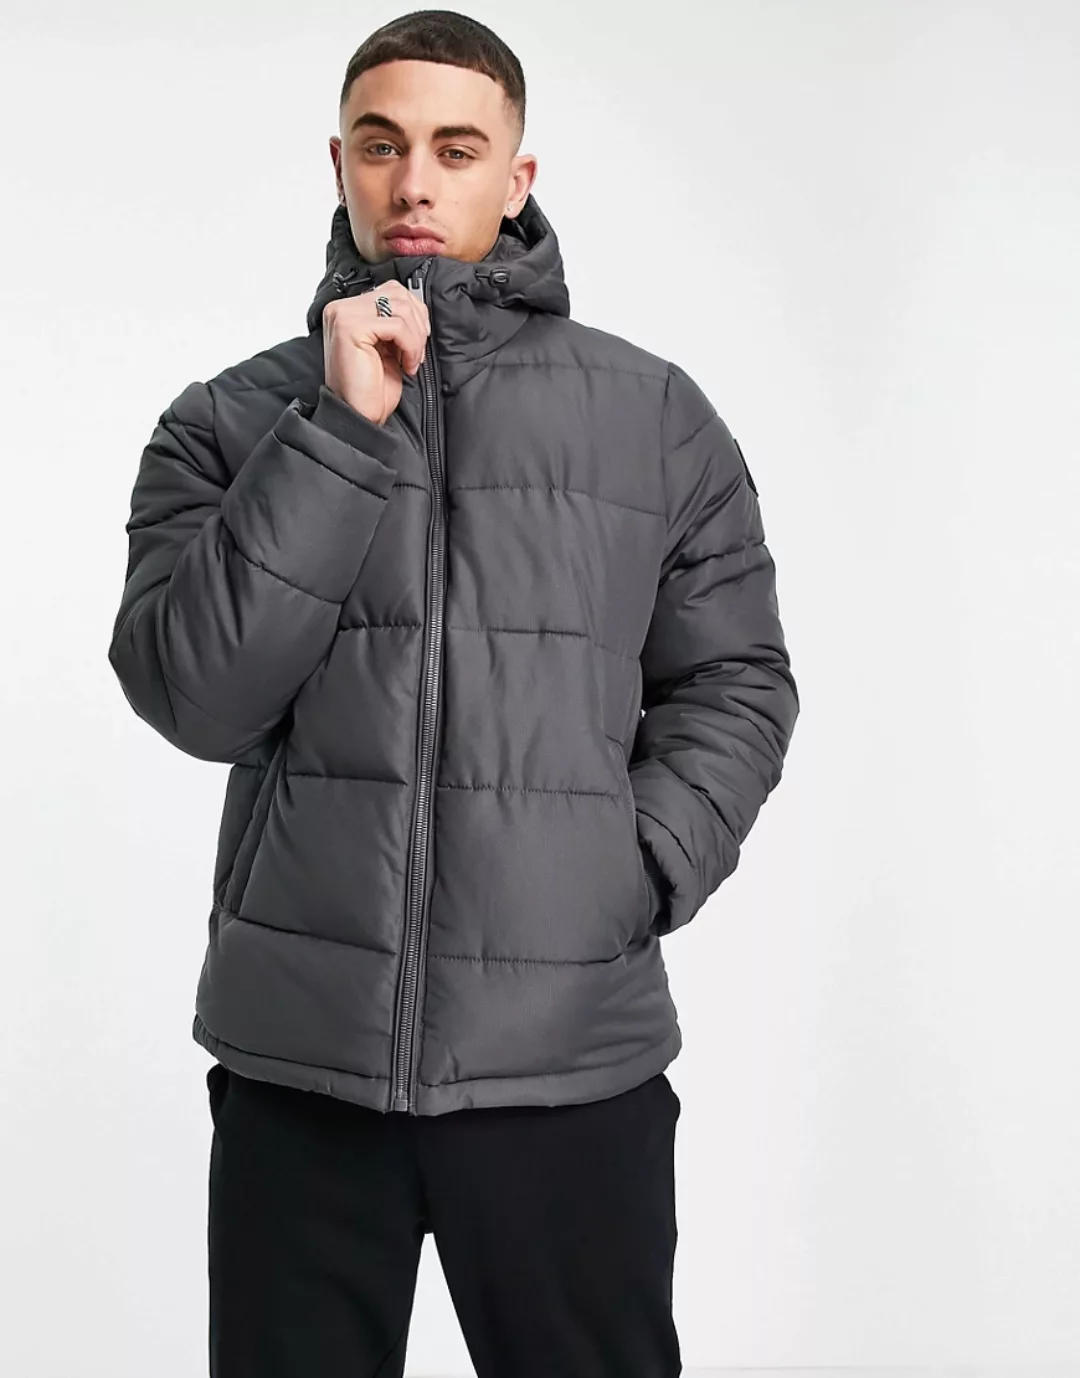 Burton Menswear – Jacke in Anthrazit-Grau günstig online kaufen